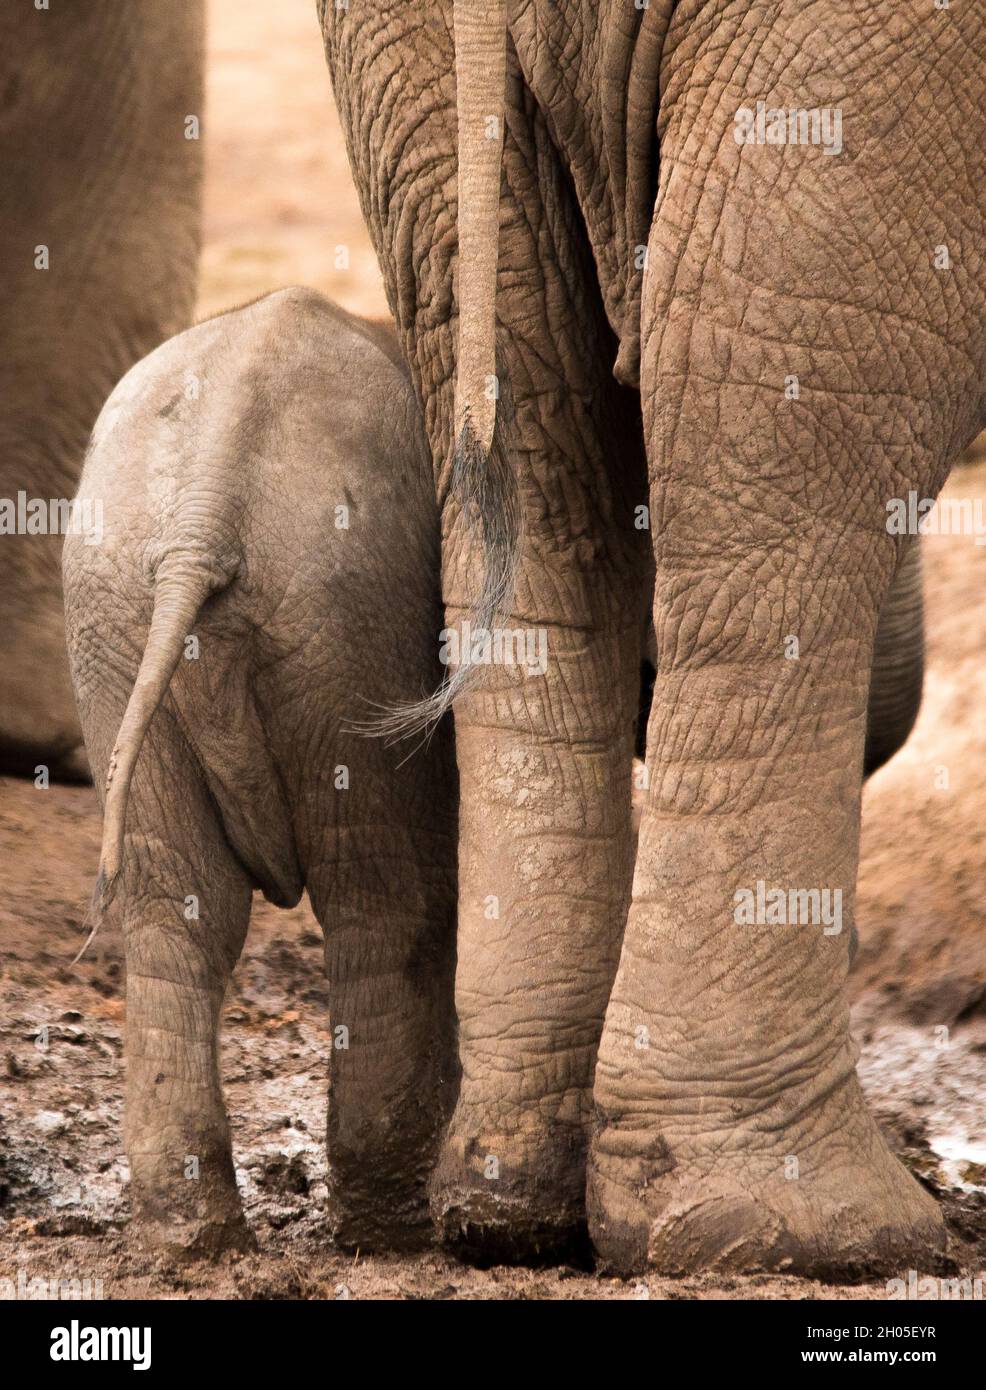 Un bebé elefante está al lado de su madre, mirando lejos de la cámara. Foto de stock